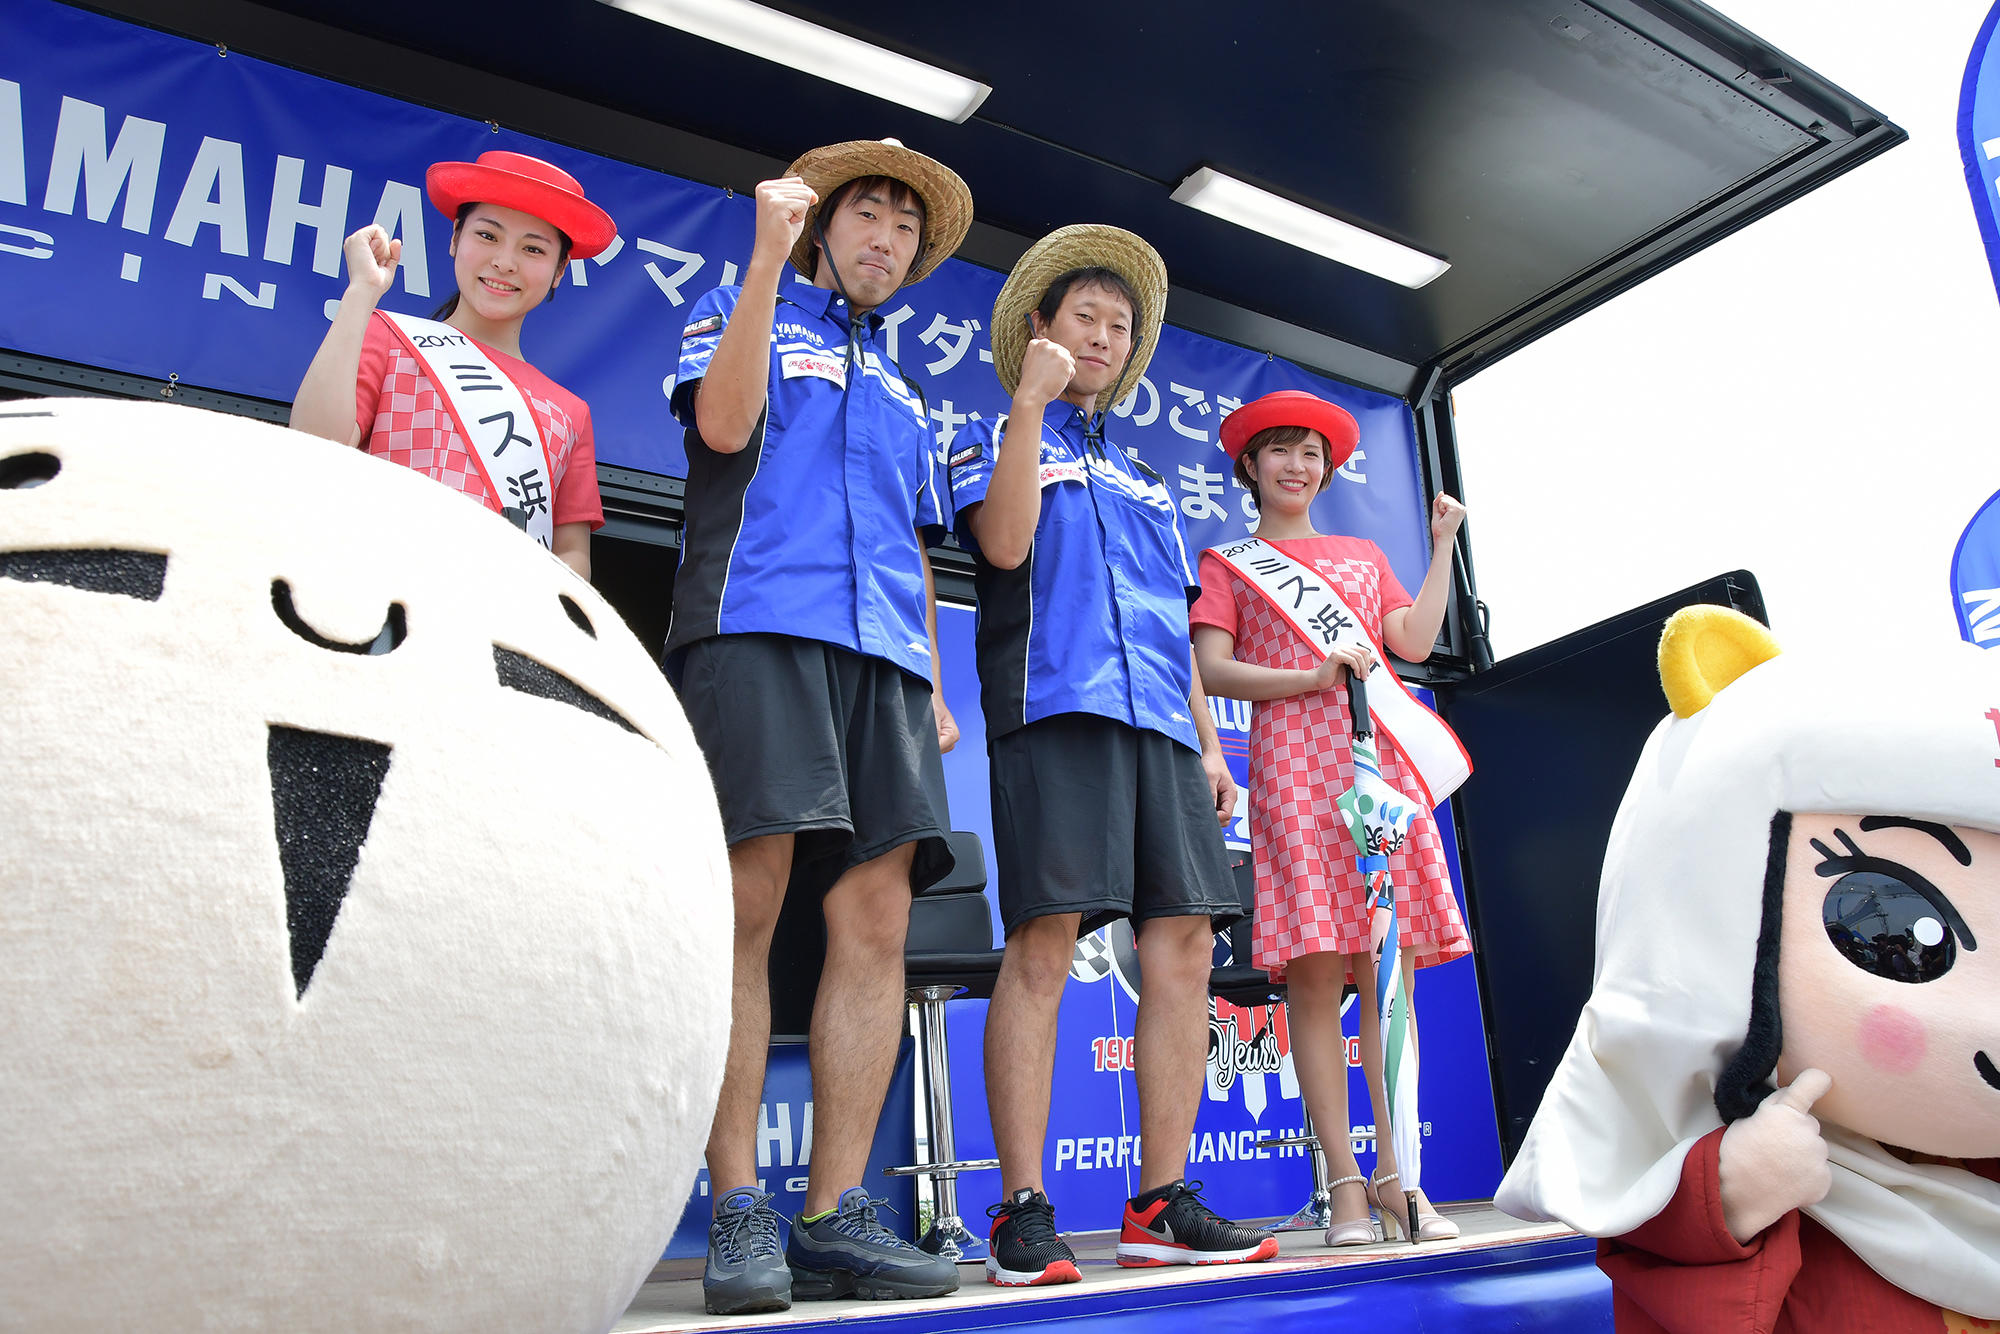 そしてヤマハ社内チーム「磐田レーシングファミリー」のライダーが登場し、決勝に向けての意気込みなどを語ってくれました。